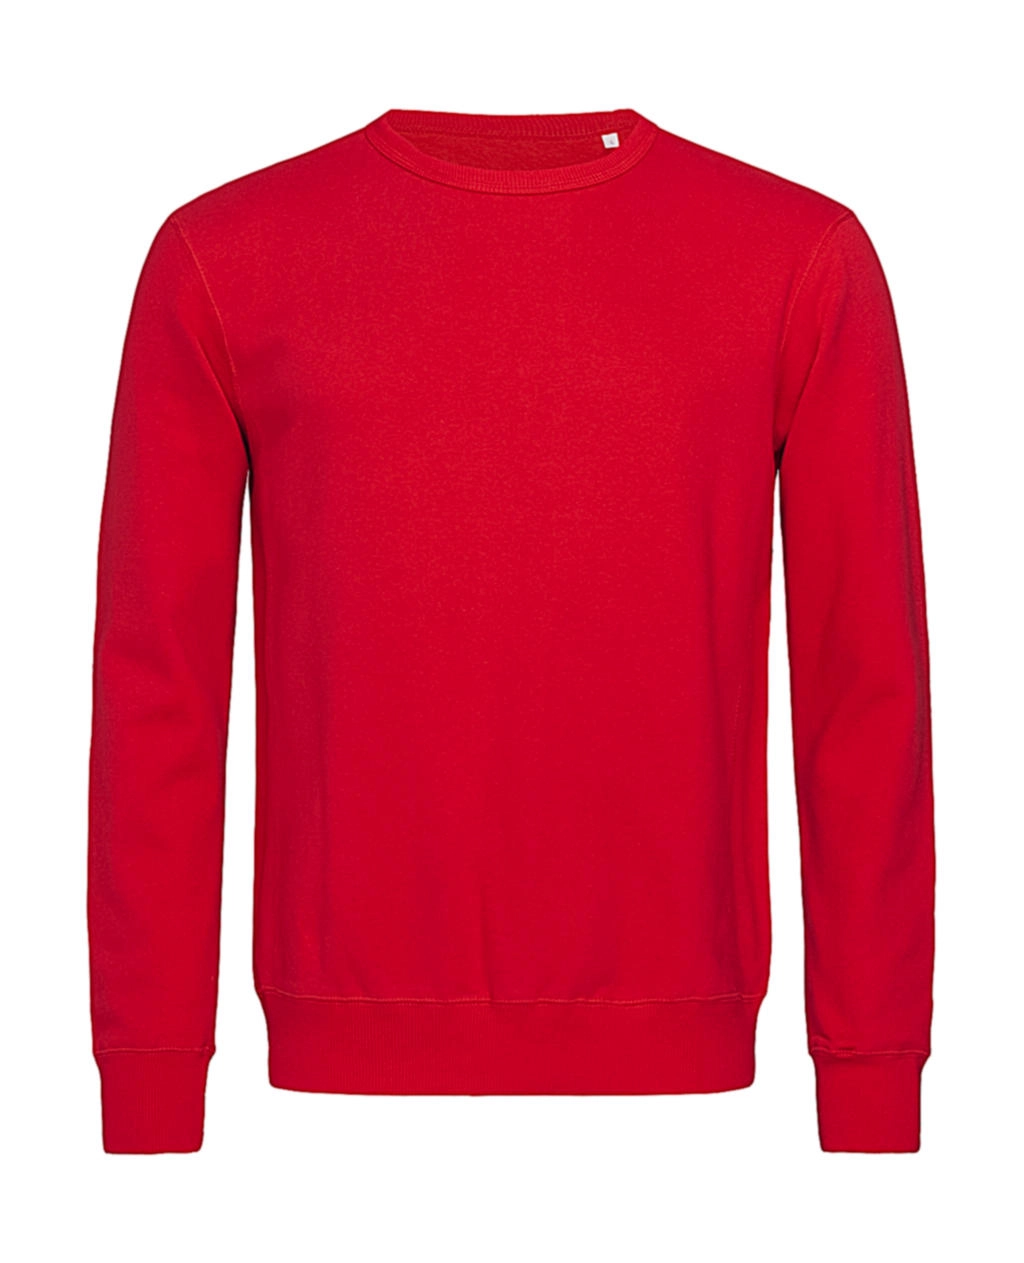 Sweatshirt Select zum Besticken und Bedrucken in der Farbe Crimson Red mit Ihren Logo, Schriftzug oder Motiv.